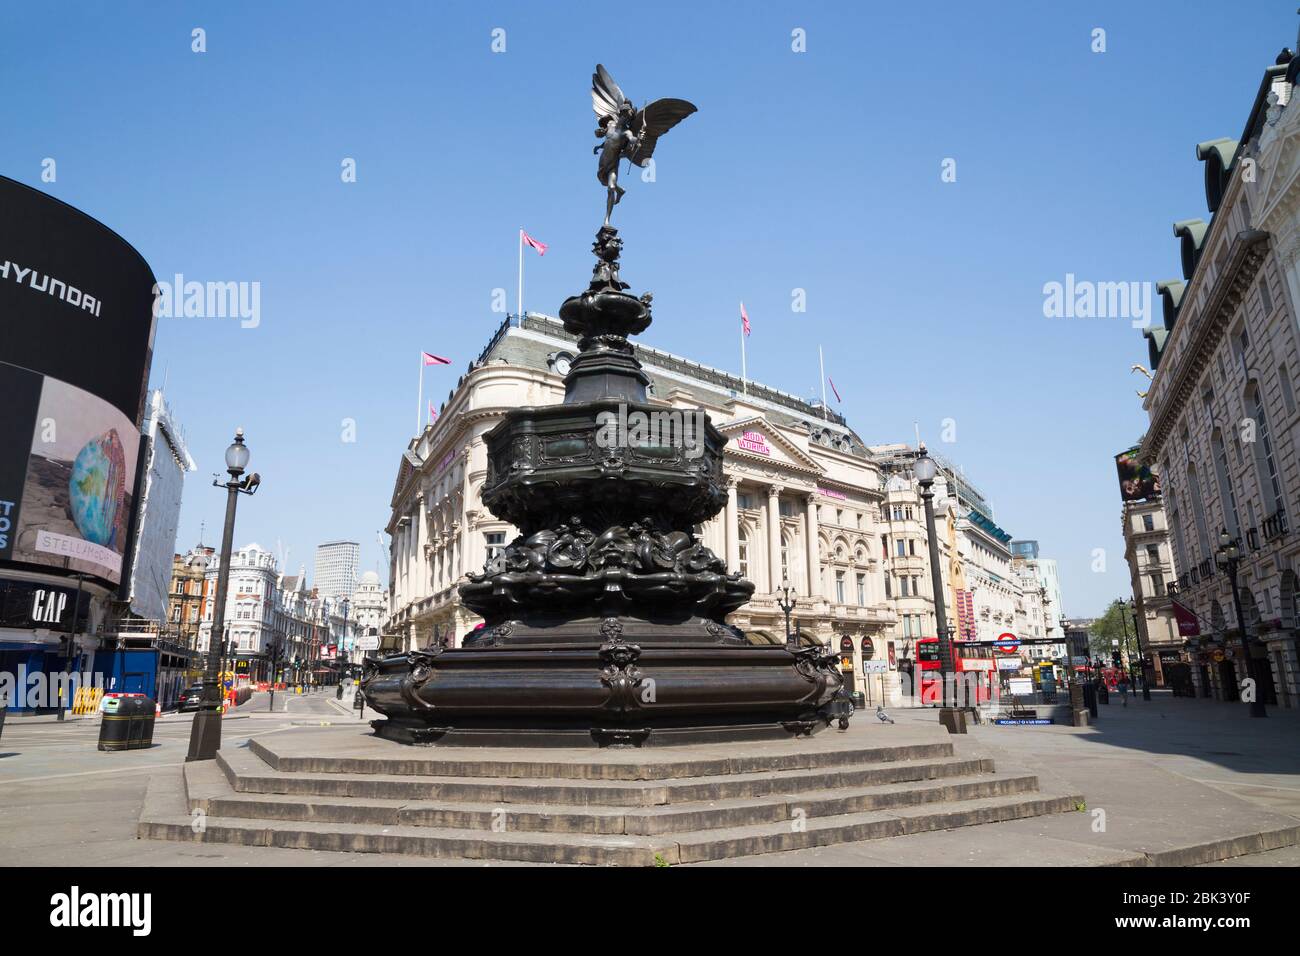 Fontana commemorativa di Shaftesbury e statua di Anteros, nota erroneamente come Eros, con un cielo blu soleggiato / cieli con il sole in una giornata di sole a Piccadilly Circus. Londra. REGNO UNITO. (118) Foto Stock